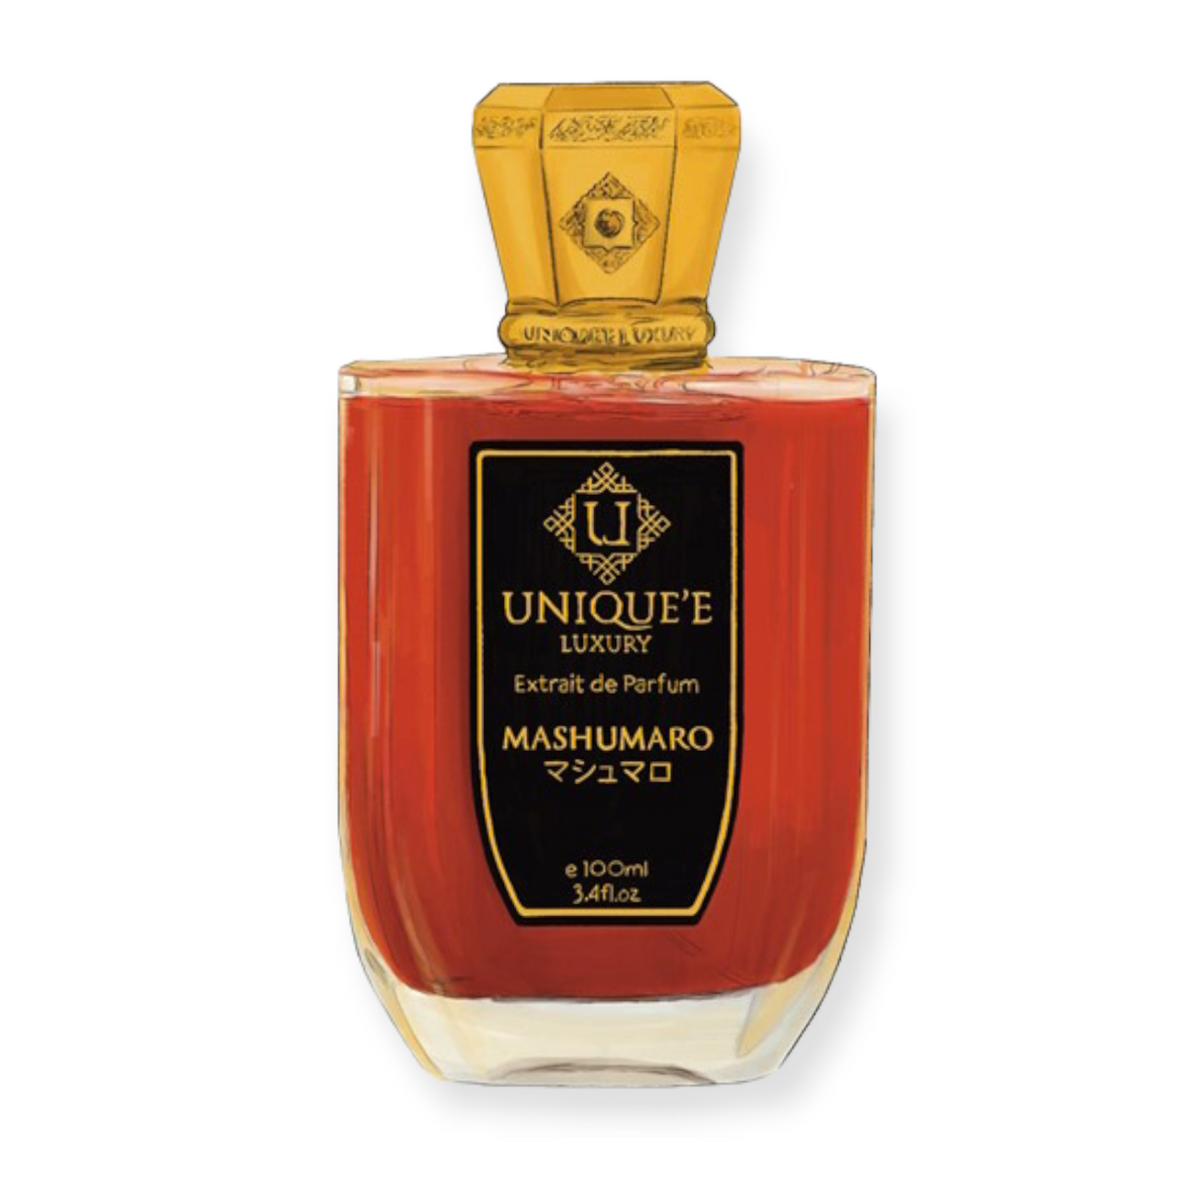 Mashumaro Unique'e Luxury for Unisex - Extrait De Parfum - 100ml